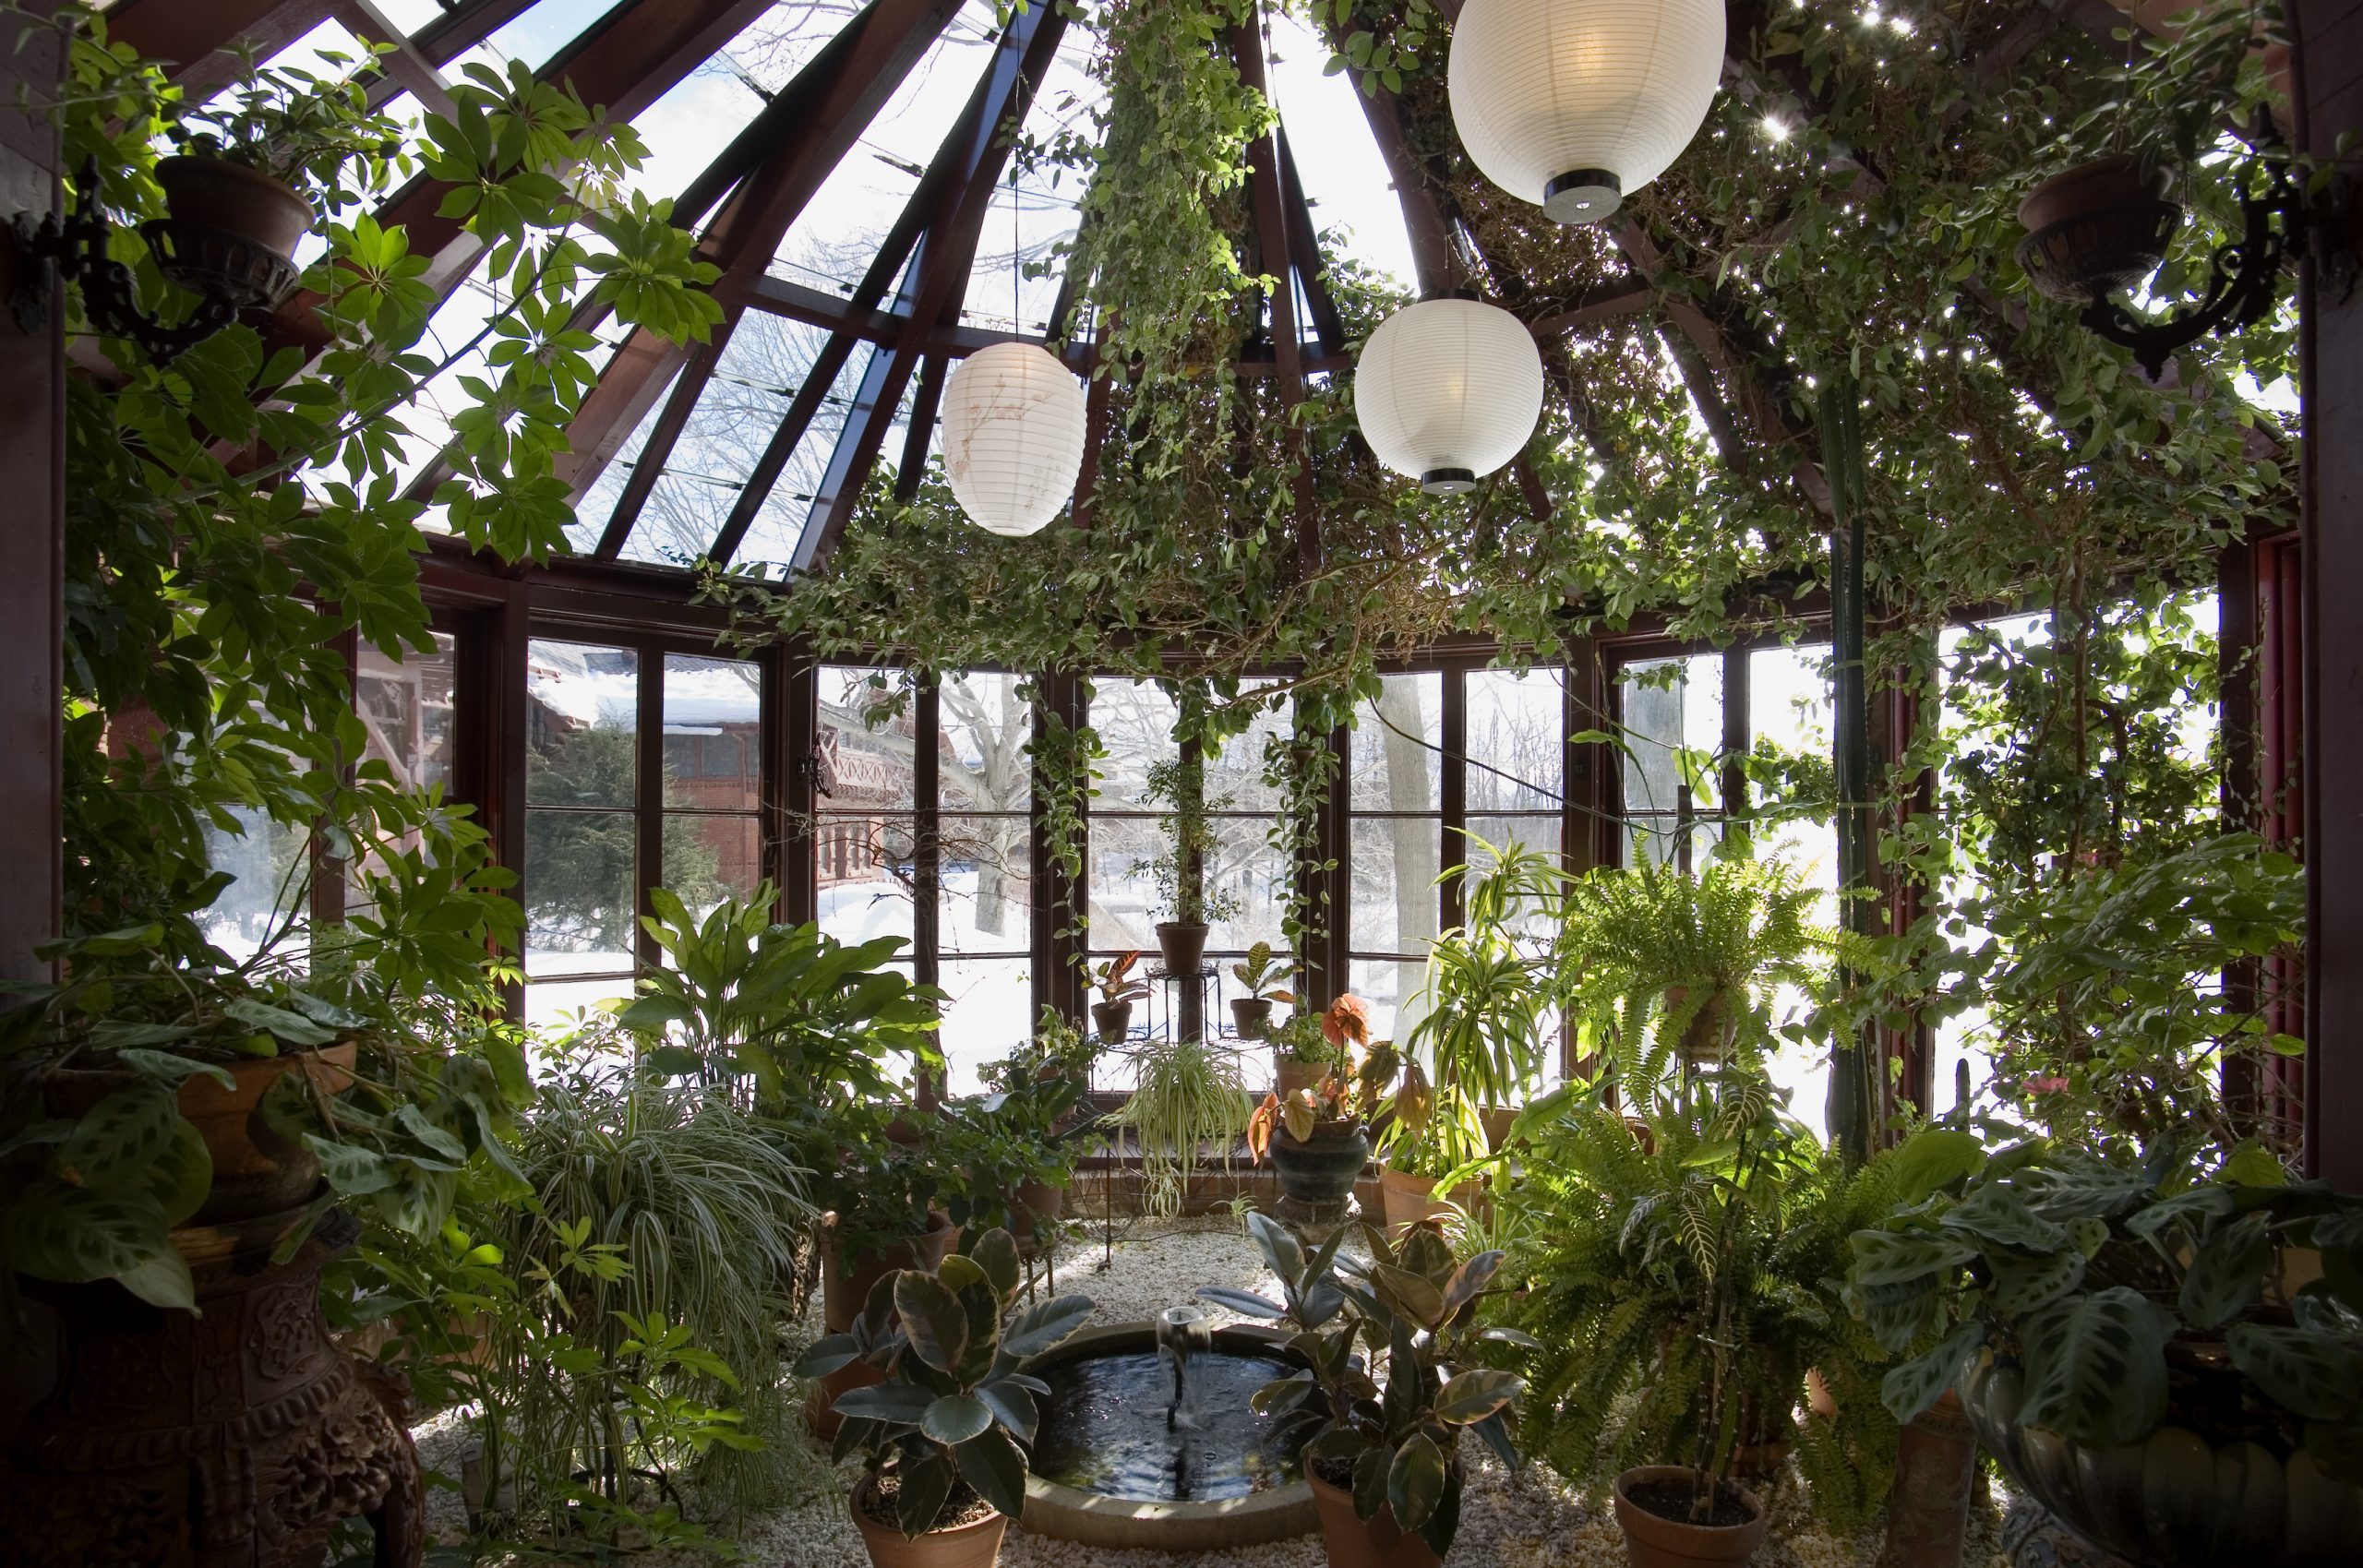 sunroom conservatory tons of plants glass ceiling nj custom sunroom builder Gambrick all wood sunroom